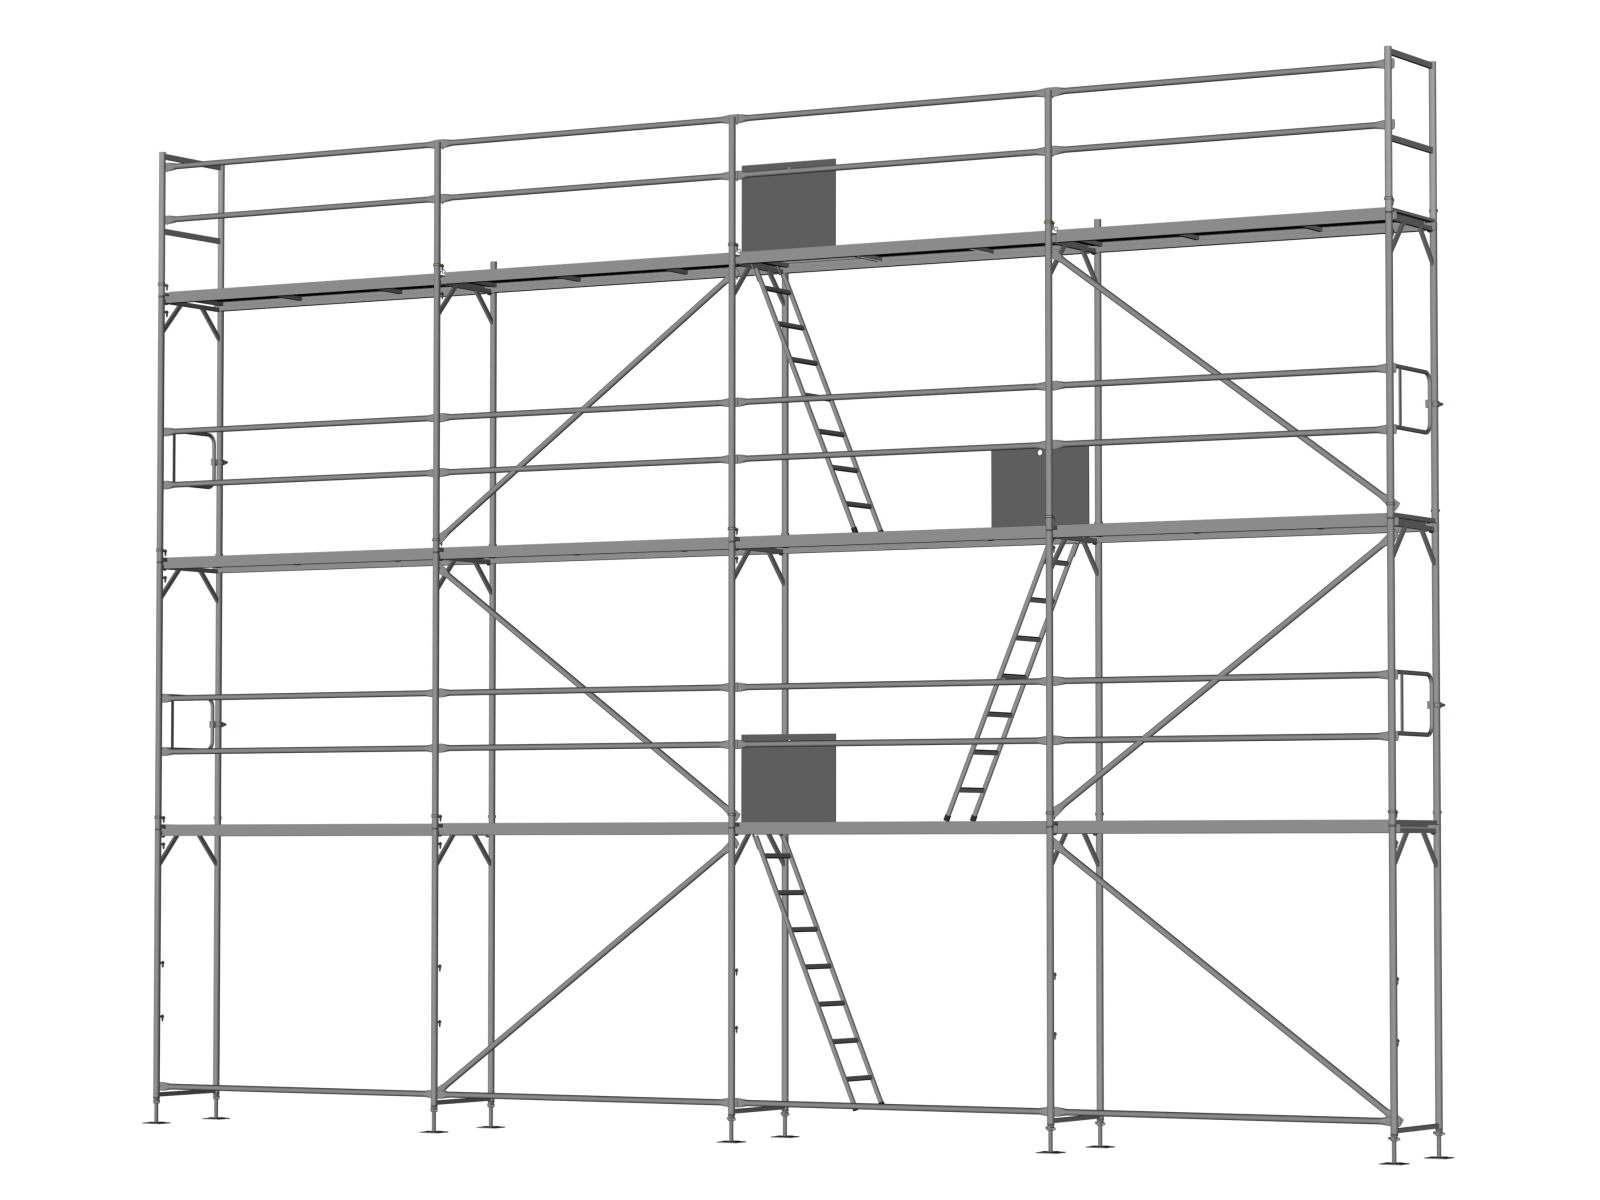 Stahl Traufseitengerüst 80 qm - 2,5 m Felder - 10 m lang - 8 m Arbeitshöhe - Basis-Gerüst inkl. Aufstieg & Befestigung